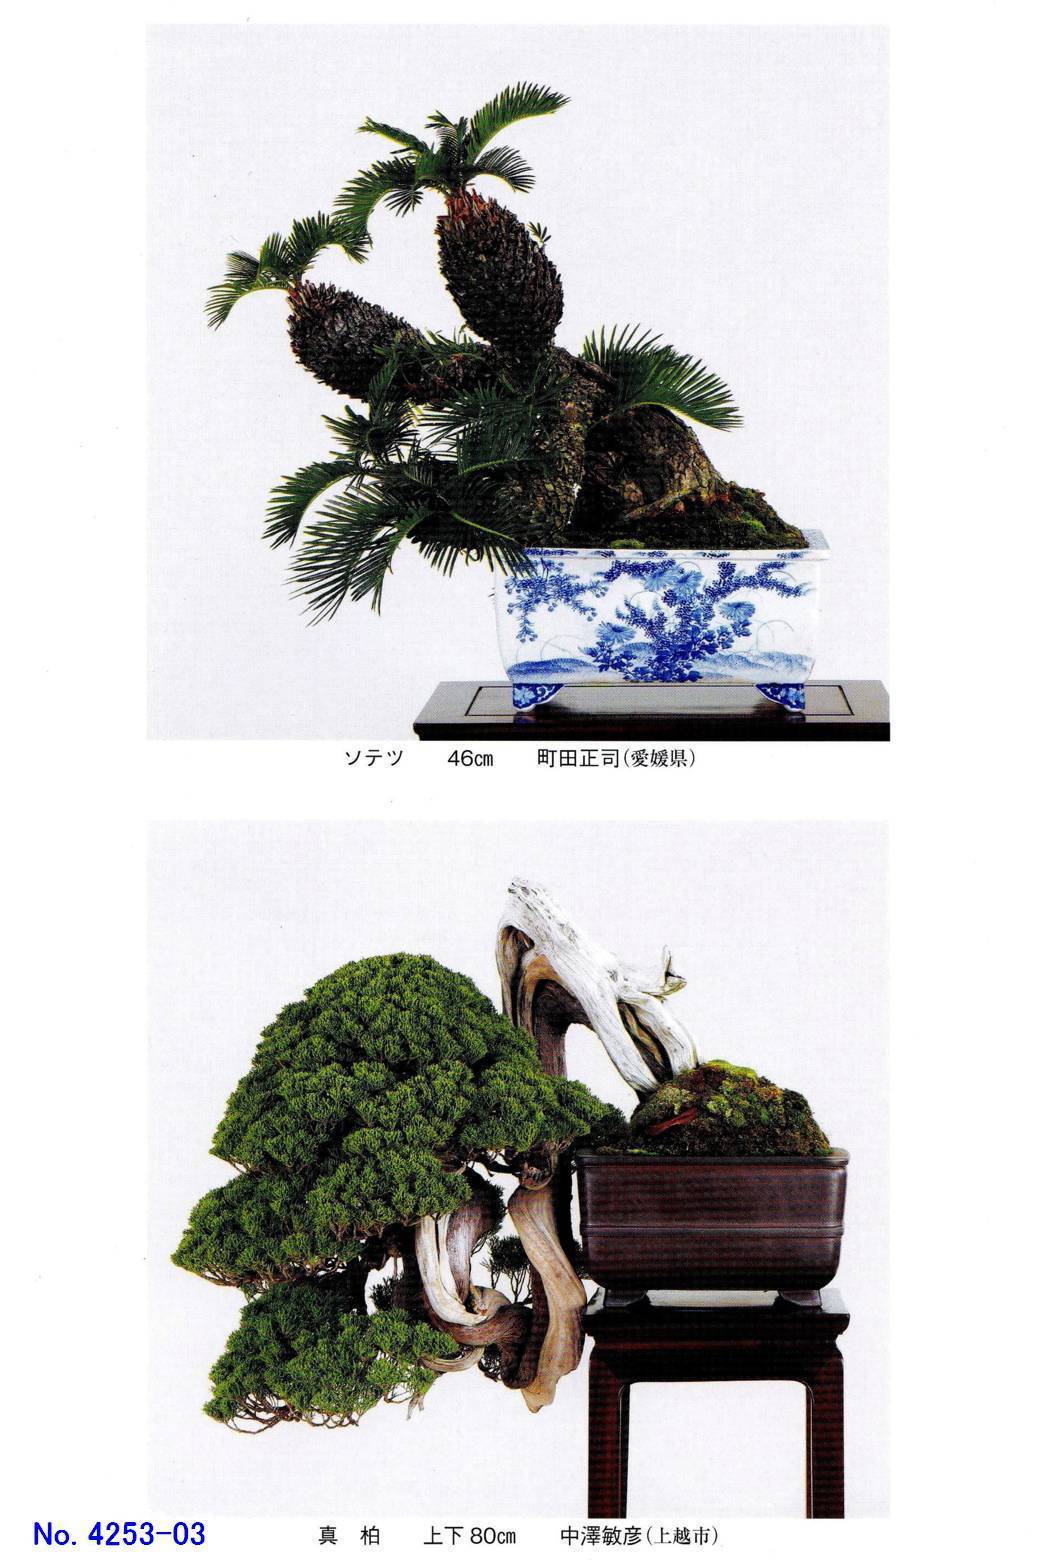 新たな「貴重盆栽登録樹」-1 - 「鶴見陶苑」の盆栽日記